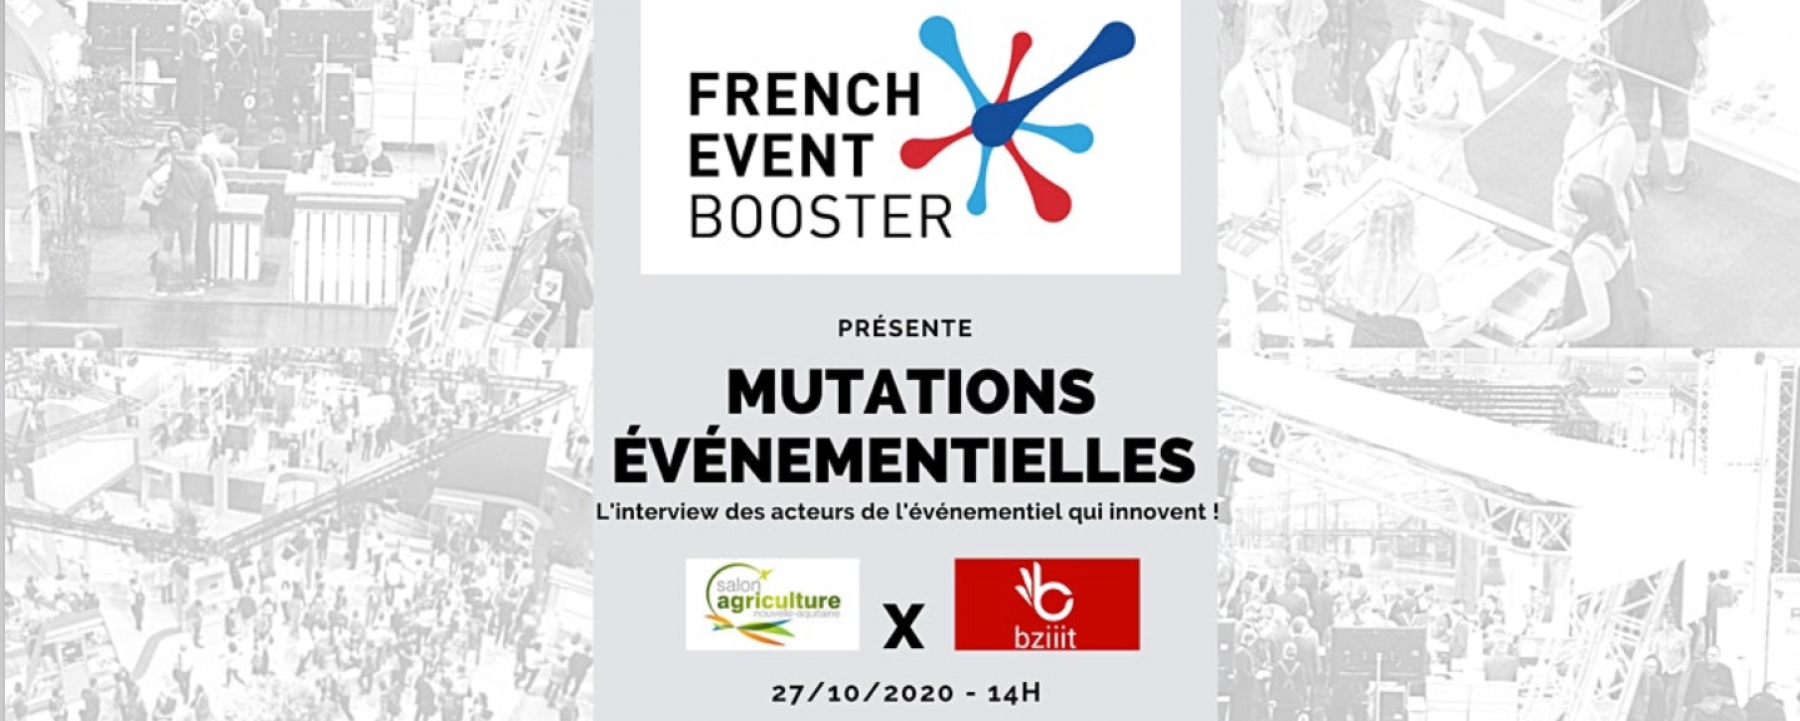 Mutations Événementielles #1 : Salon de L'Agriculture en NA x Bziiit, organisé par French Event Booster 